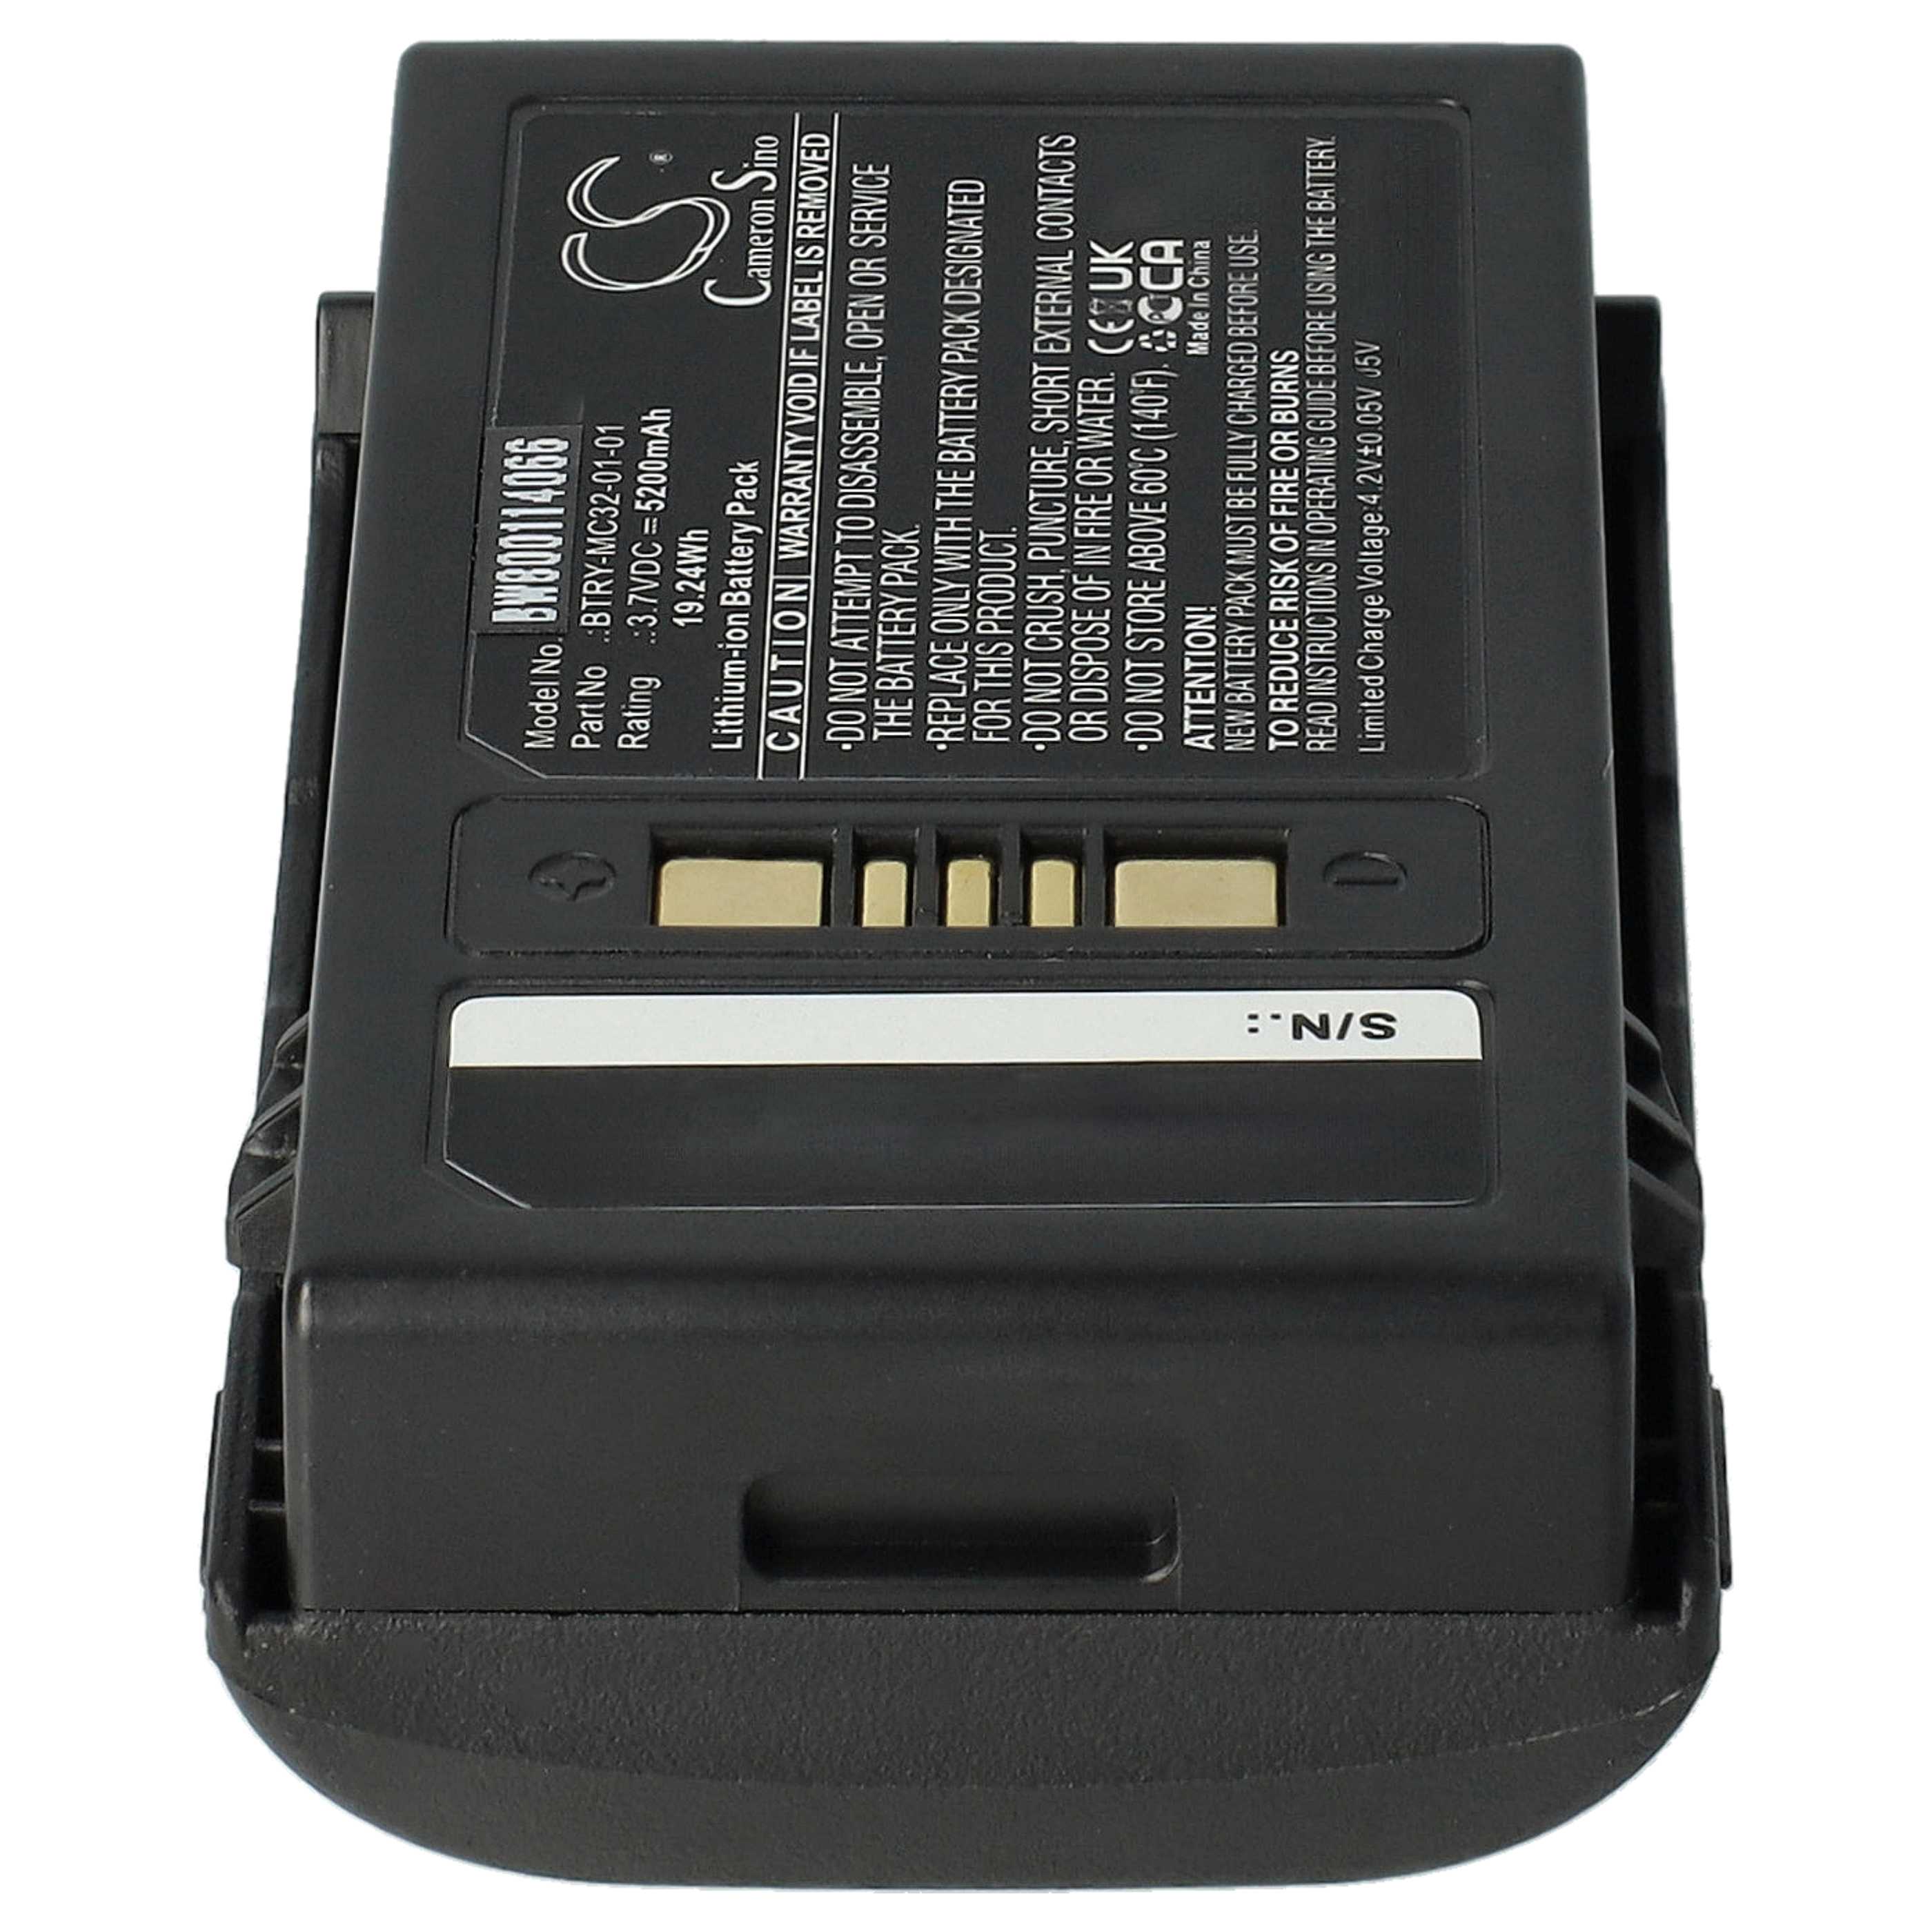 Batteria per lettore di codici a barre, POS sostituisce Motorola BTRY-MC32-01-01 - 5200mAh, 3,7V Li-Ion